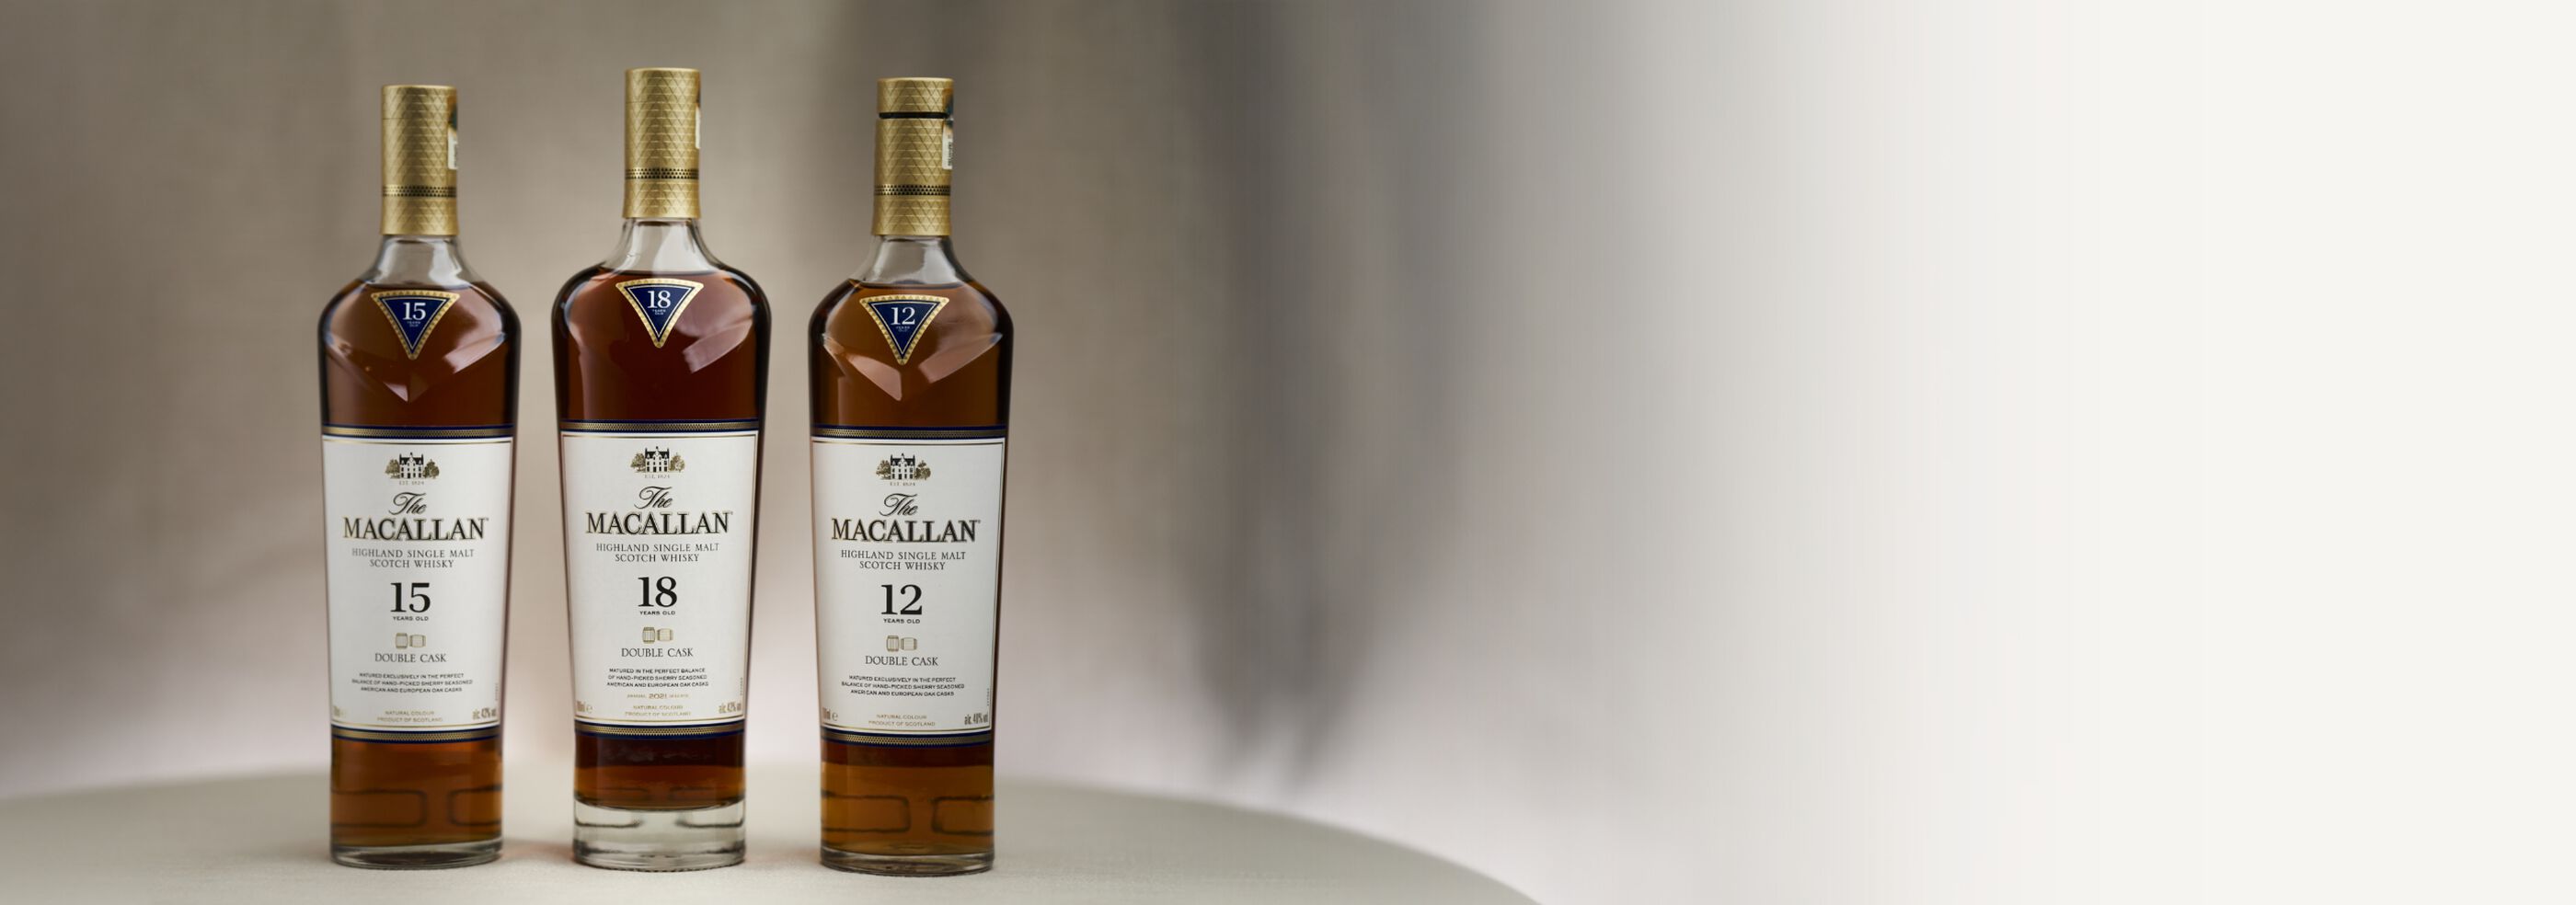 Bottles of The Macallan scotch